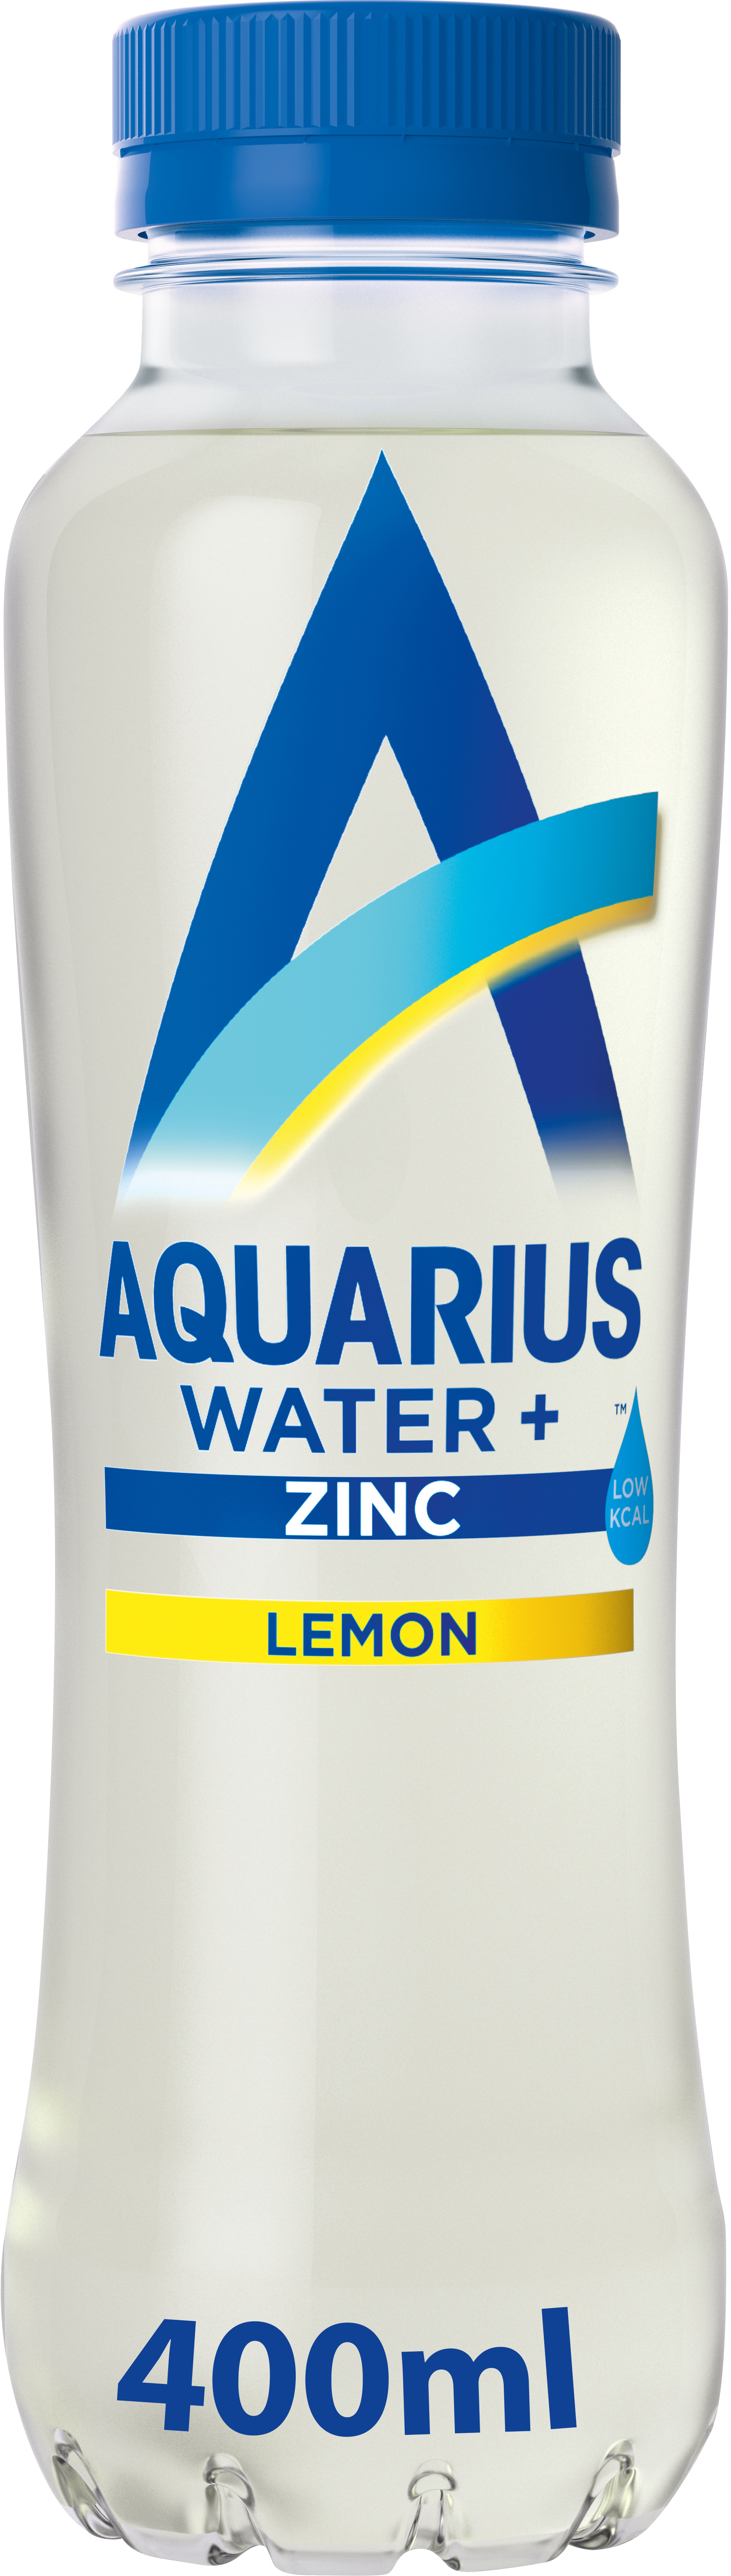 AQUARIUS Water+Zinc Lemon 129400001600 Pet, 40 cl, 12 pcs. Pet, 40 cl, 12 pcs.